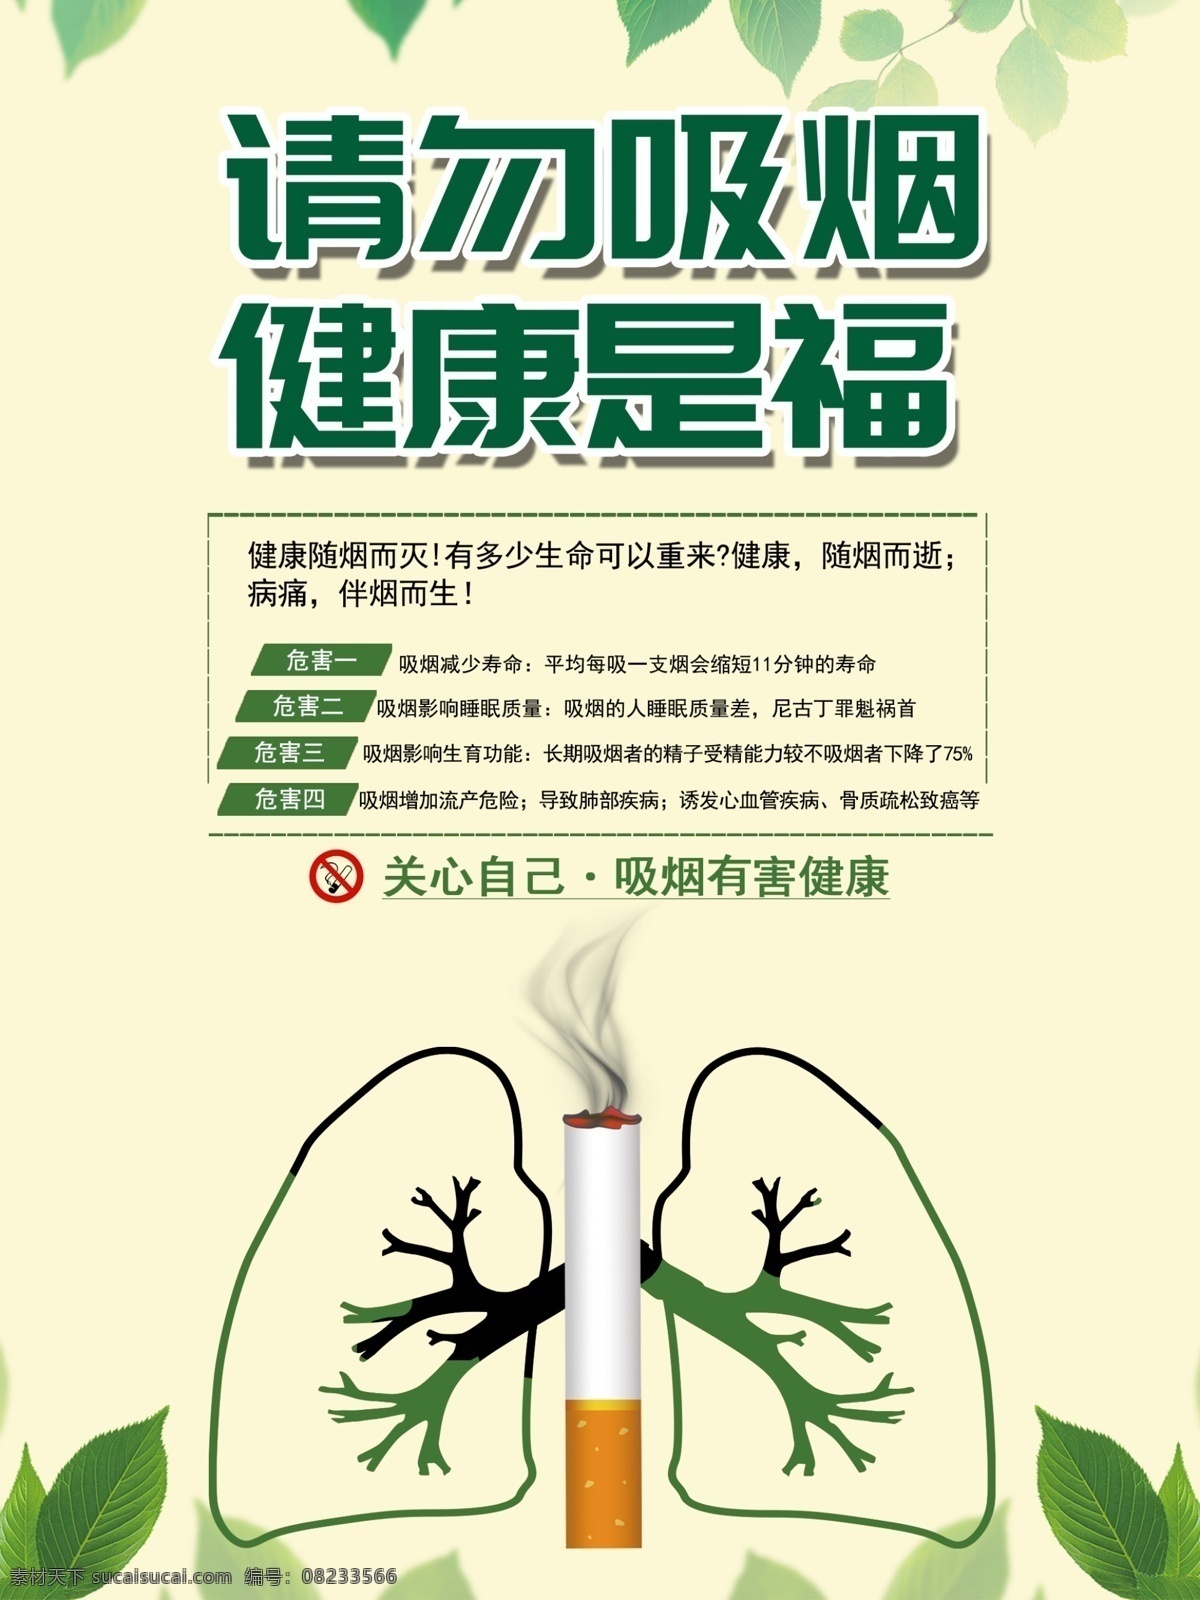 禁止吸烟标志 禁止吸烟门牌 禁止吸烟样式 禁止吸烟模版 温馨提示